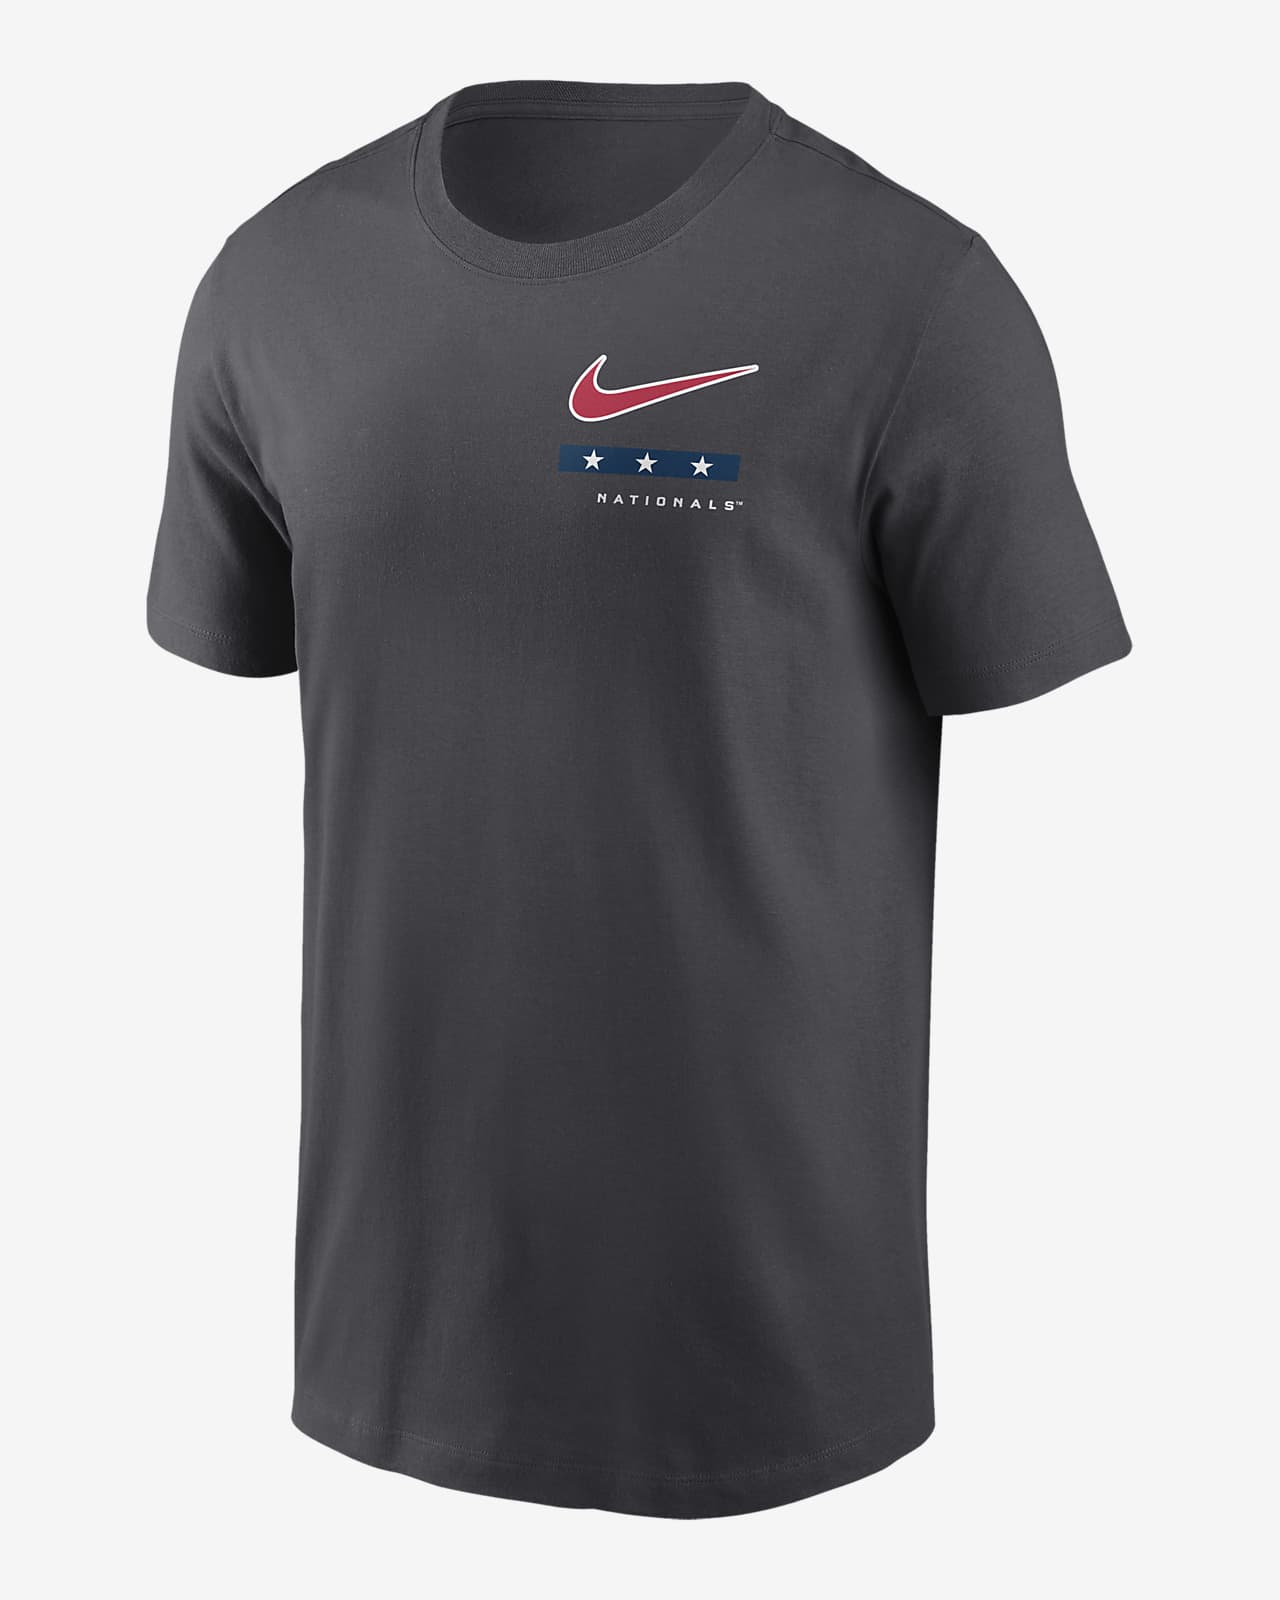 Washington Nationals T-SHIRT. Mens 100% Cotton Authentic-T T-Shirt. B141